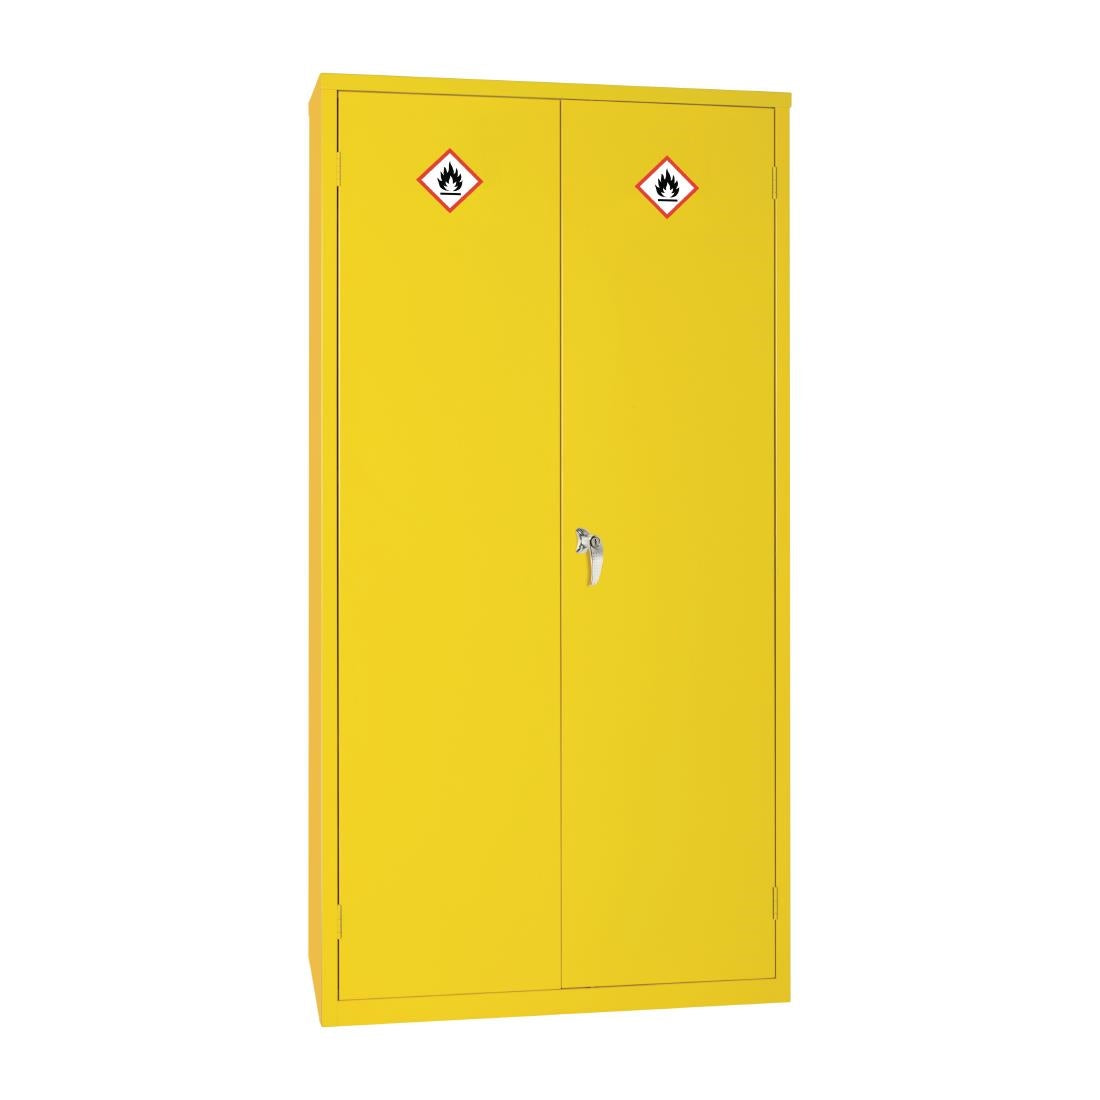 CD996 Hazardous Substance Cabinet Double Door Yellow 50Ltr JD Catering Equipment Solutions Ltd